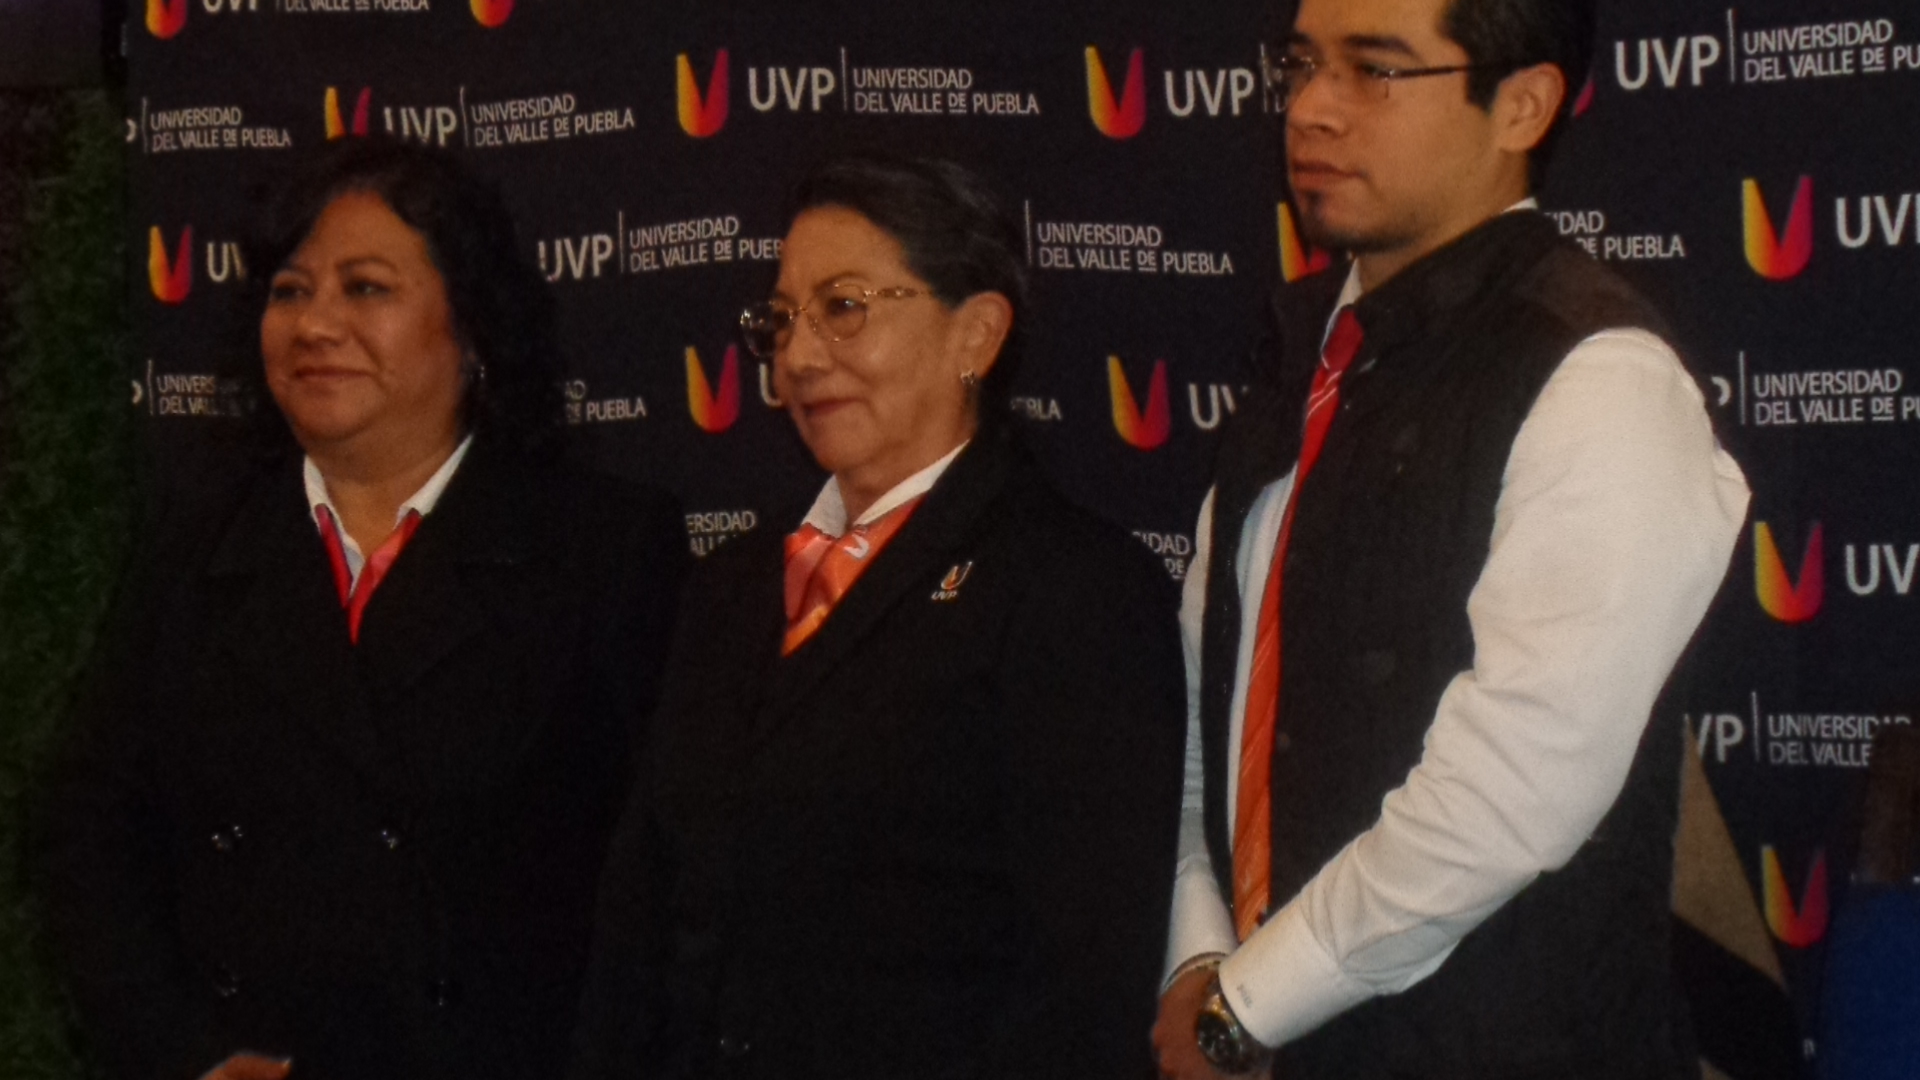 La Universidad del Valle de Puebla con varias certificaciones